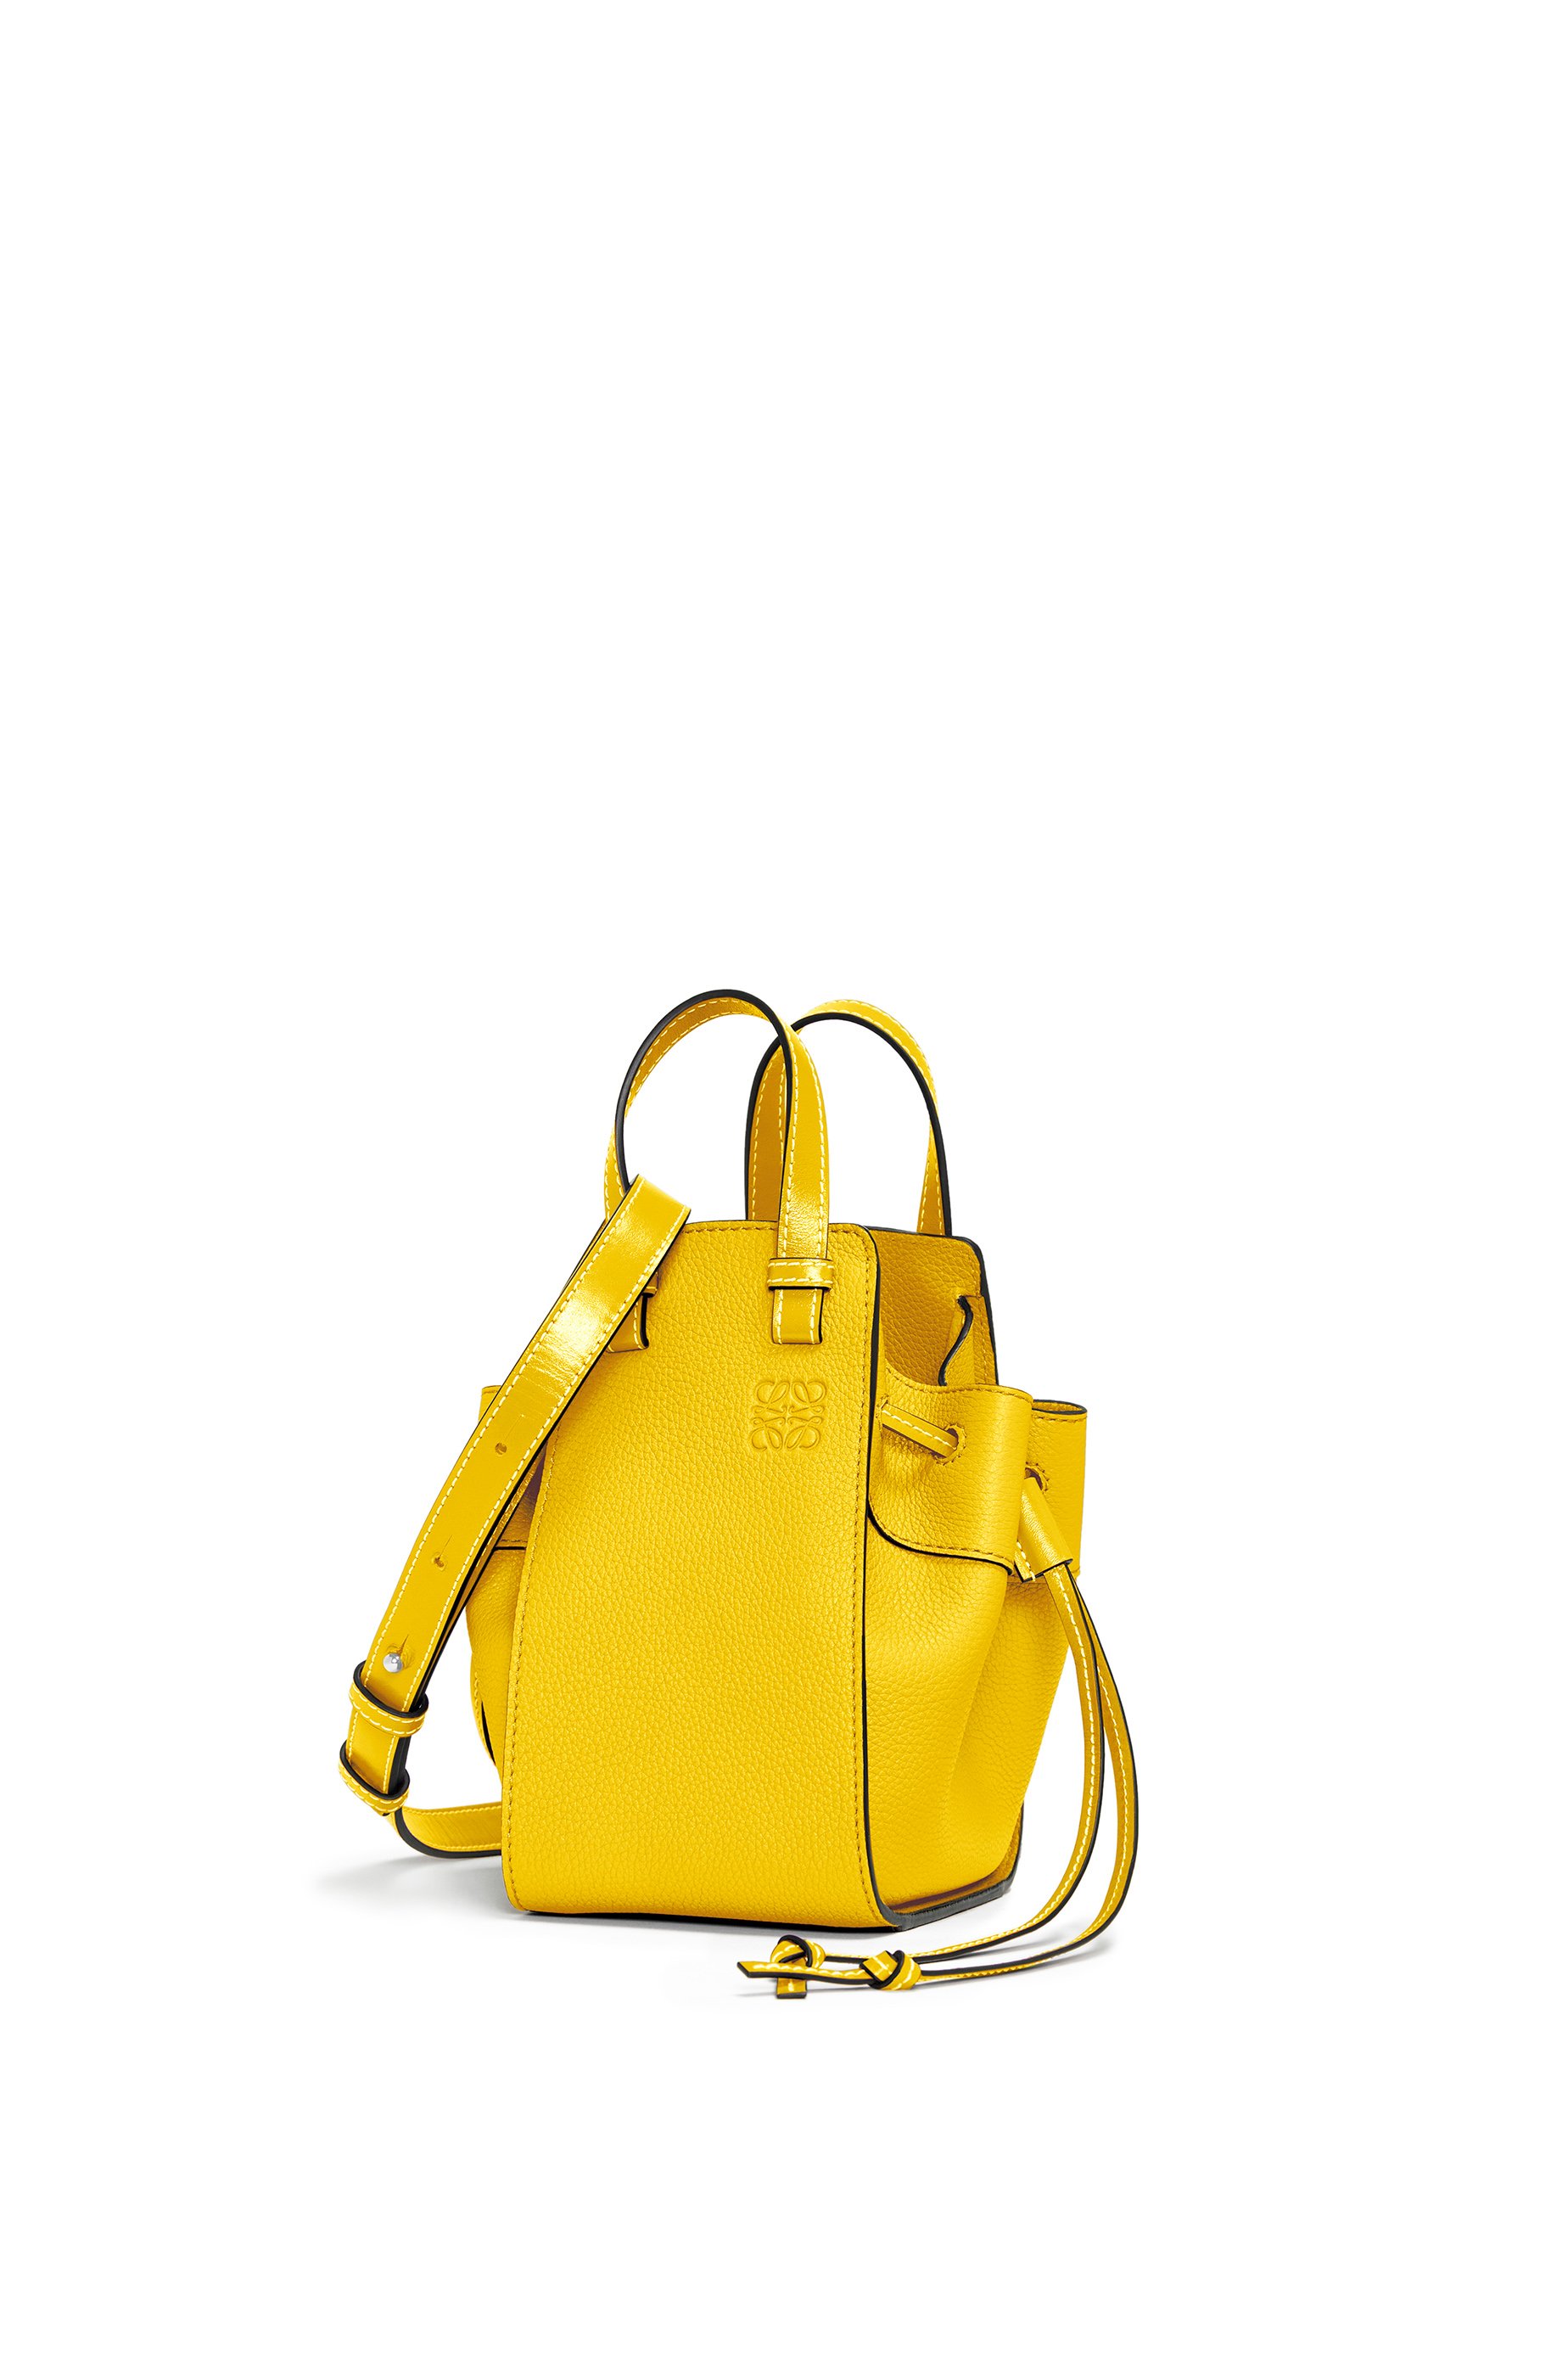 loewe yellow bag